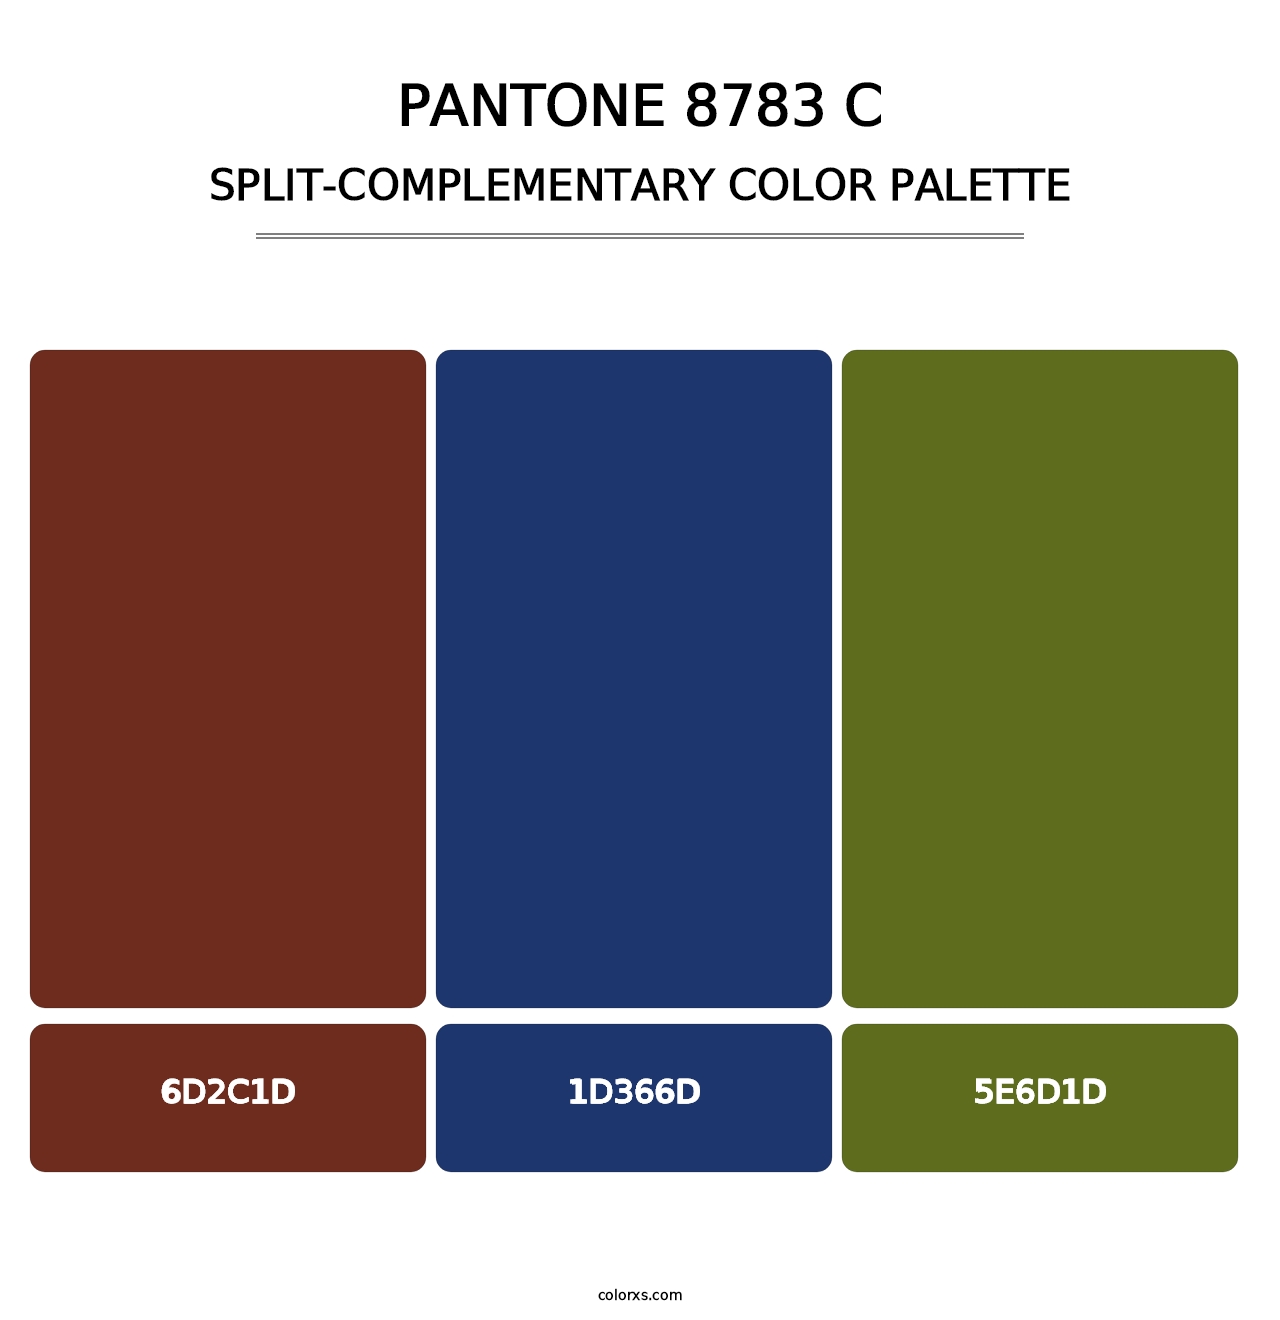 PANTONE 8783 C - Split-Complementary Color Palette